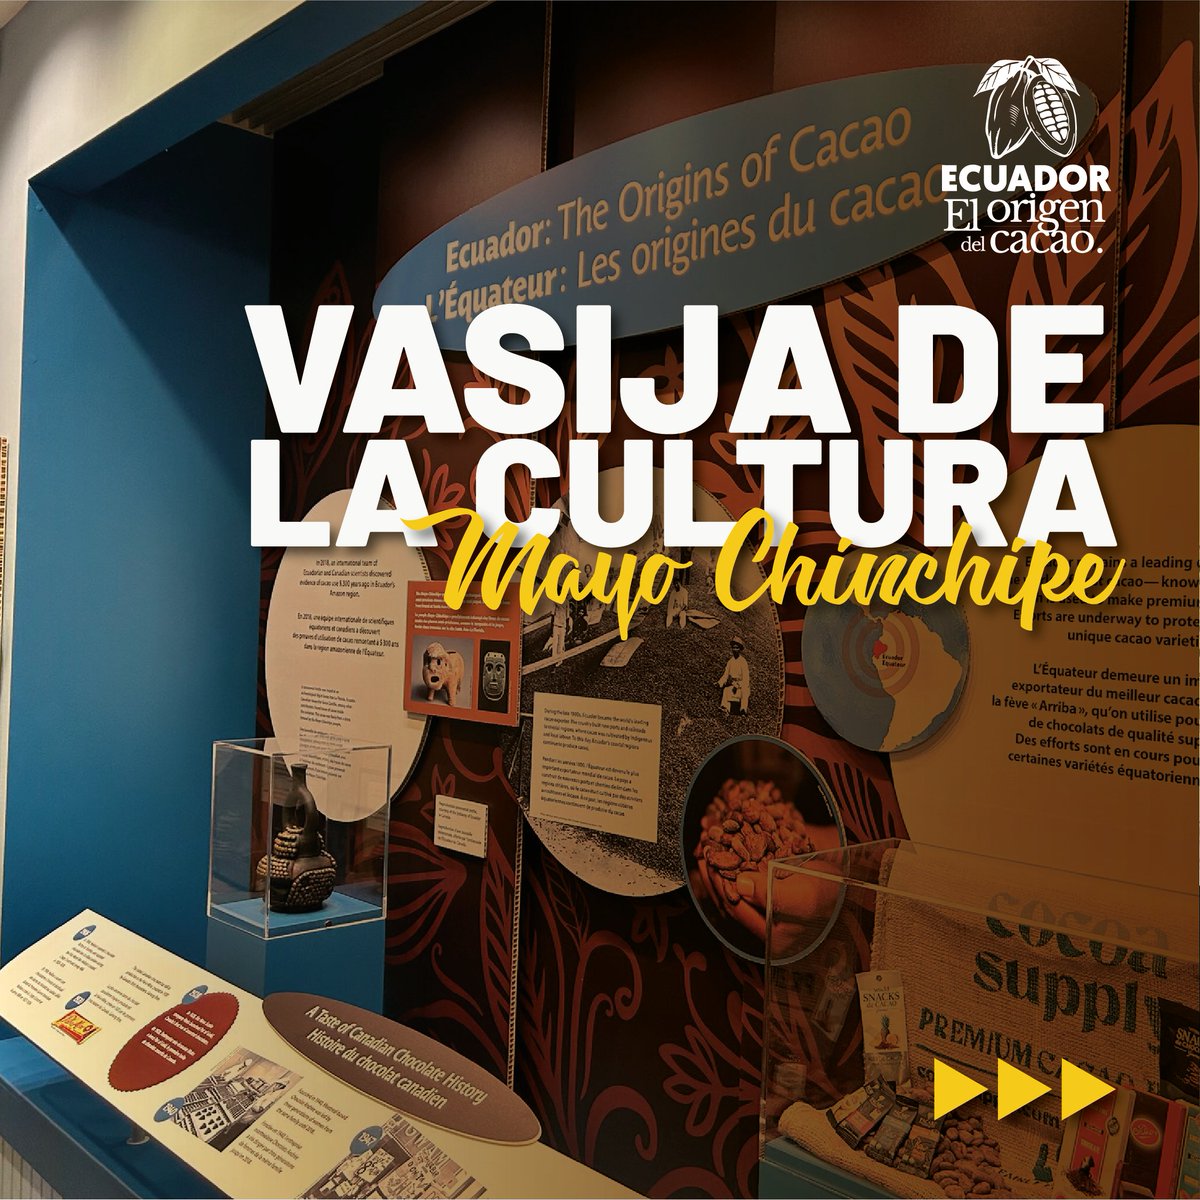 Ecuador🇪🇨se destaca en el ámbito internacional por su papel preponderante en el origen del cacao. Esta posición se refuerza con la exposición de 45 réplicas de una antigua vasija de la cultura Mayo Chinchipe en 29 países y tres organizaciones internacionales.🧵